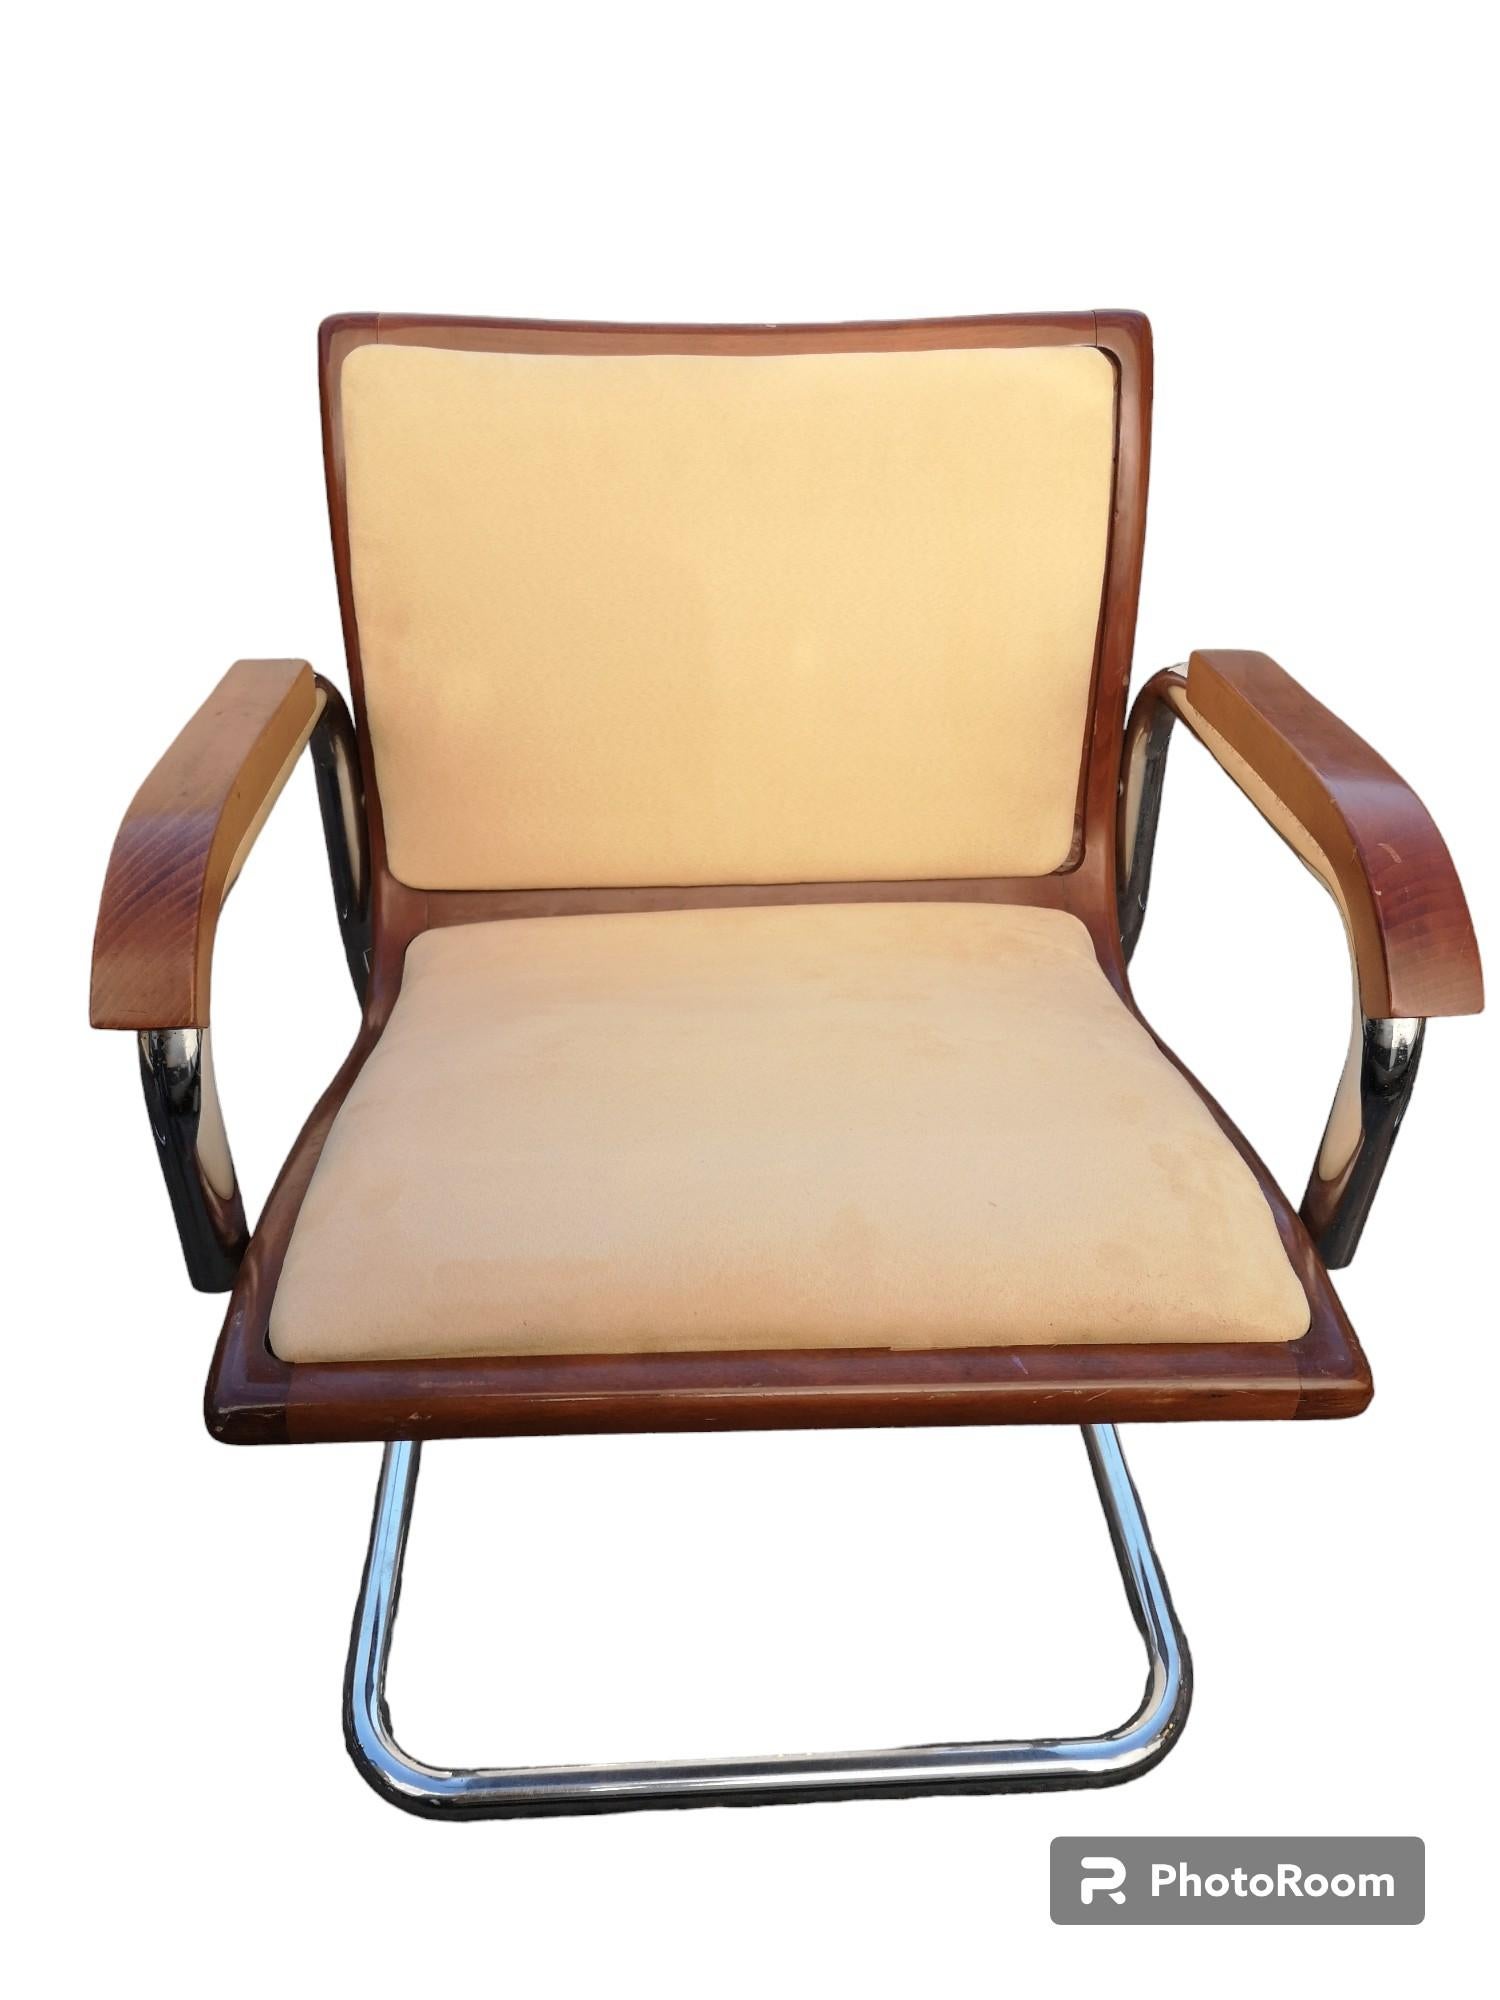 4 sedie tipo modello Cesca con struttura in acciaio e legno di noce e rivestite in tessuto alcantara anni 70 in buone condizioni.
La seduta e lo schienale sono dei pannelli smontabili.
Misure della sedia:
Larghezza   56 cm
Profondità   60 cm
Altezza